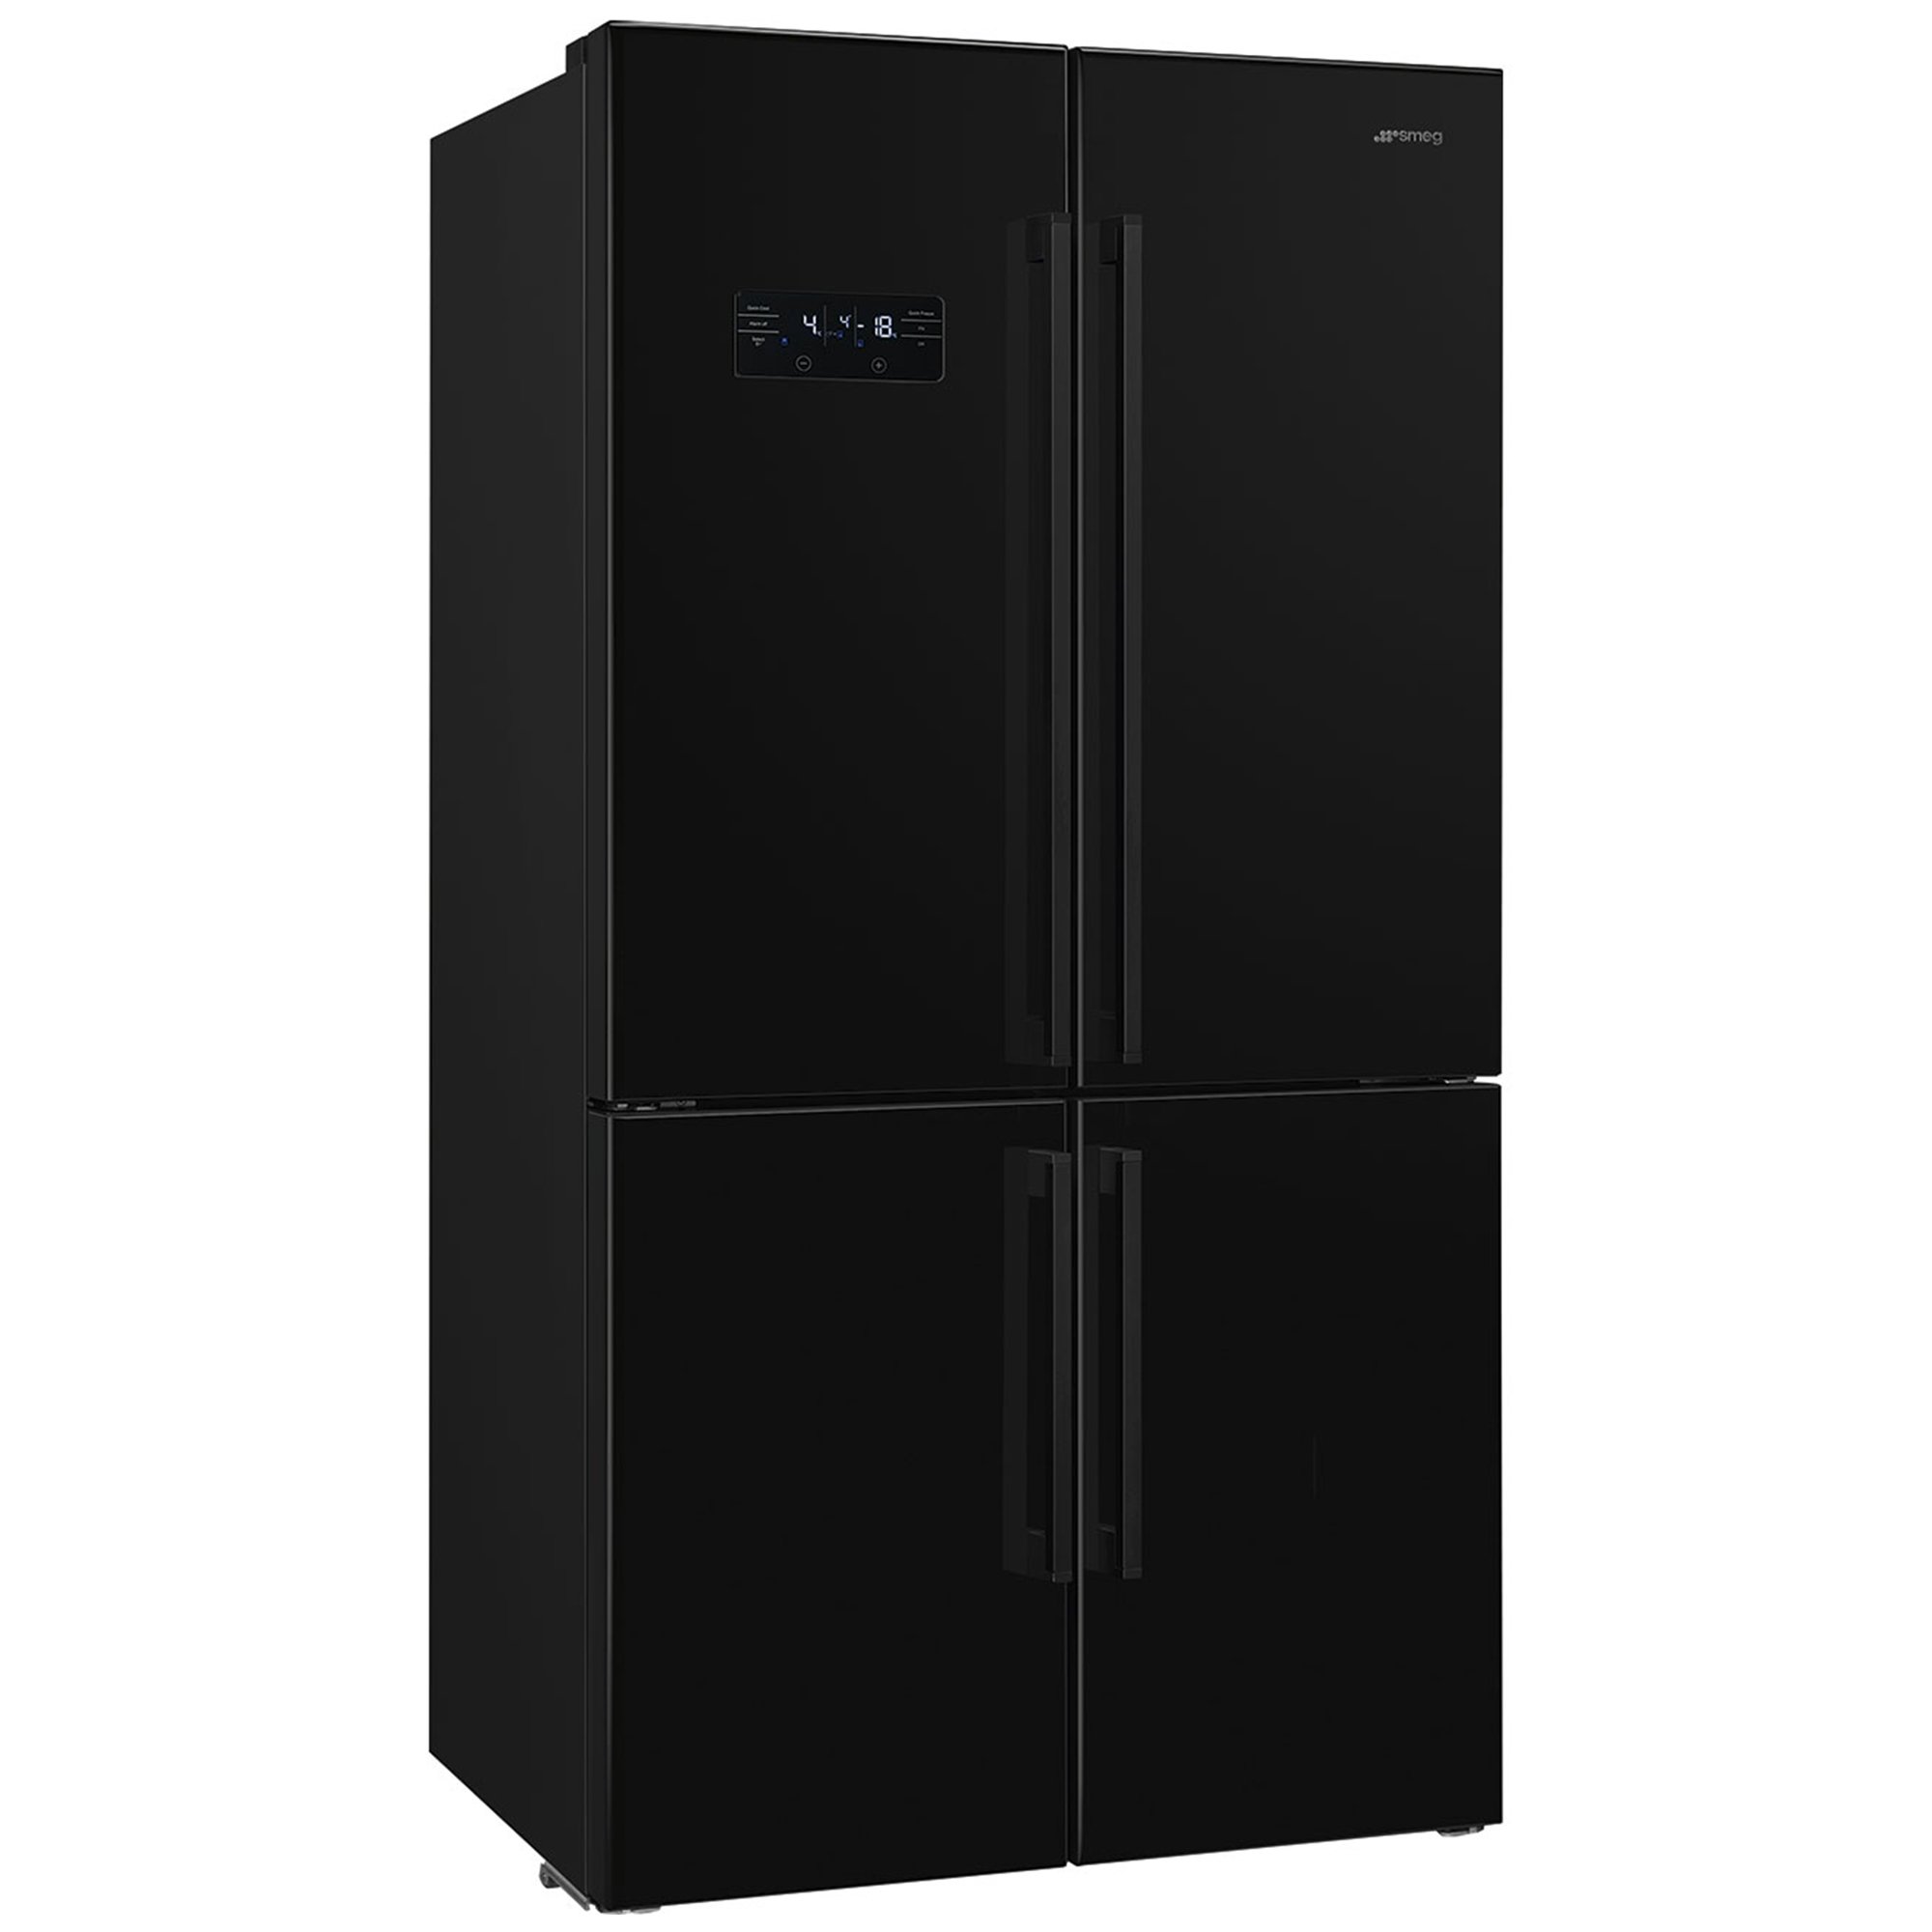 Smeg French Door kjøleskap/fryser 92 cm svart